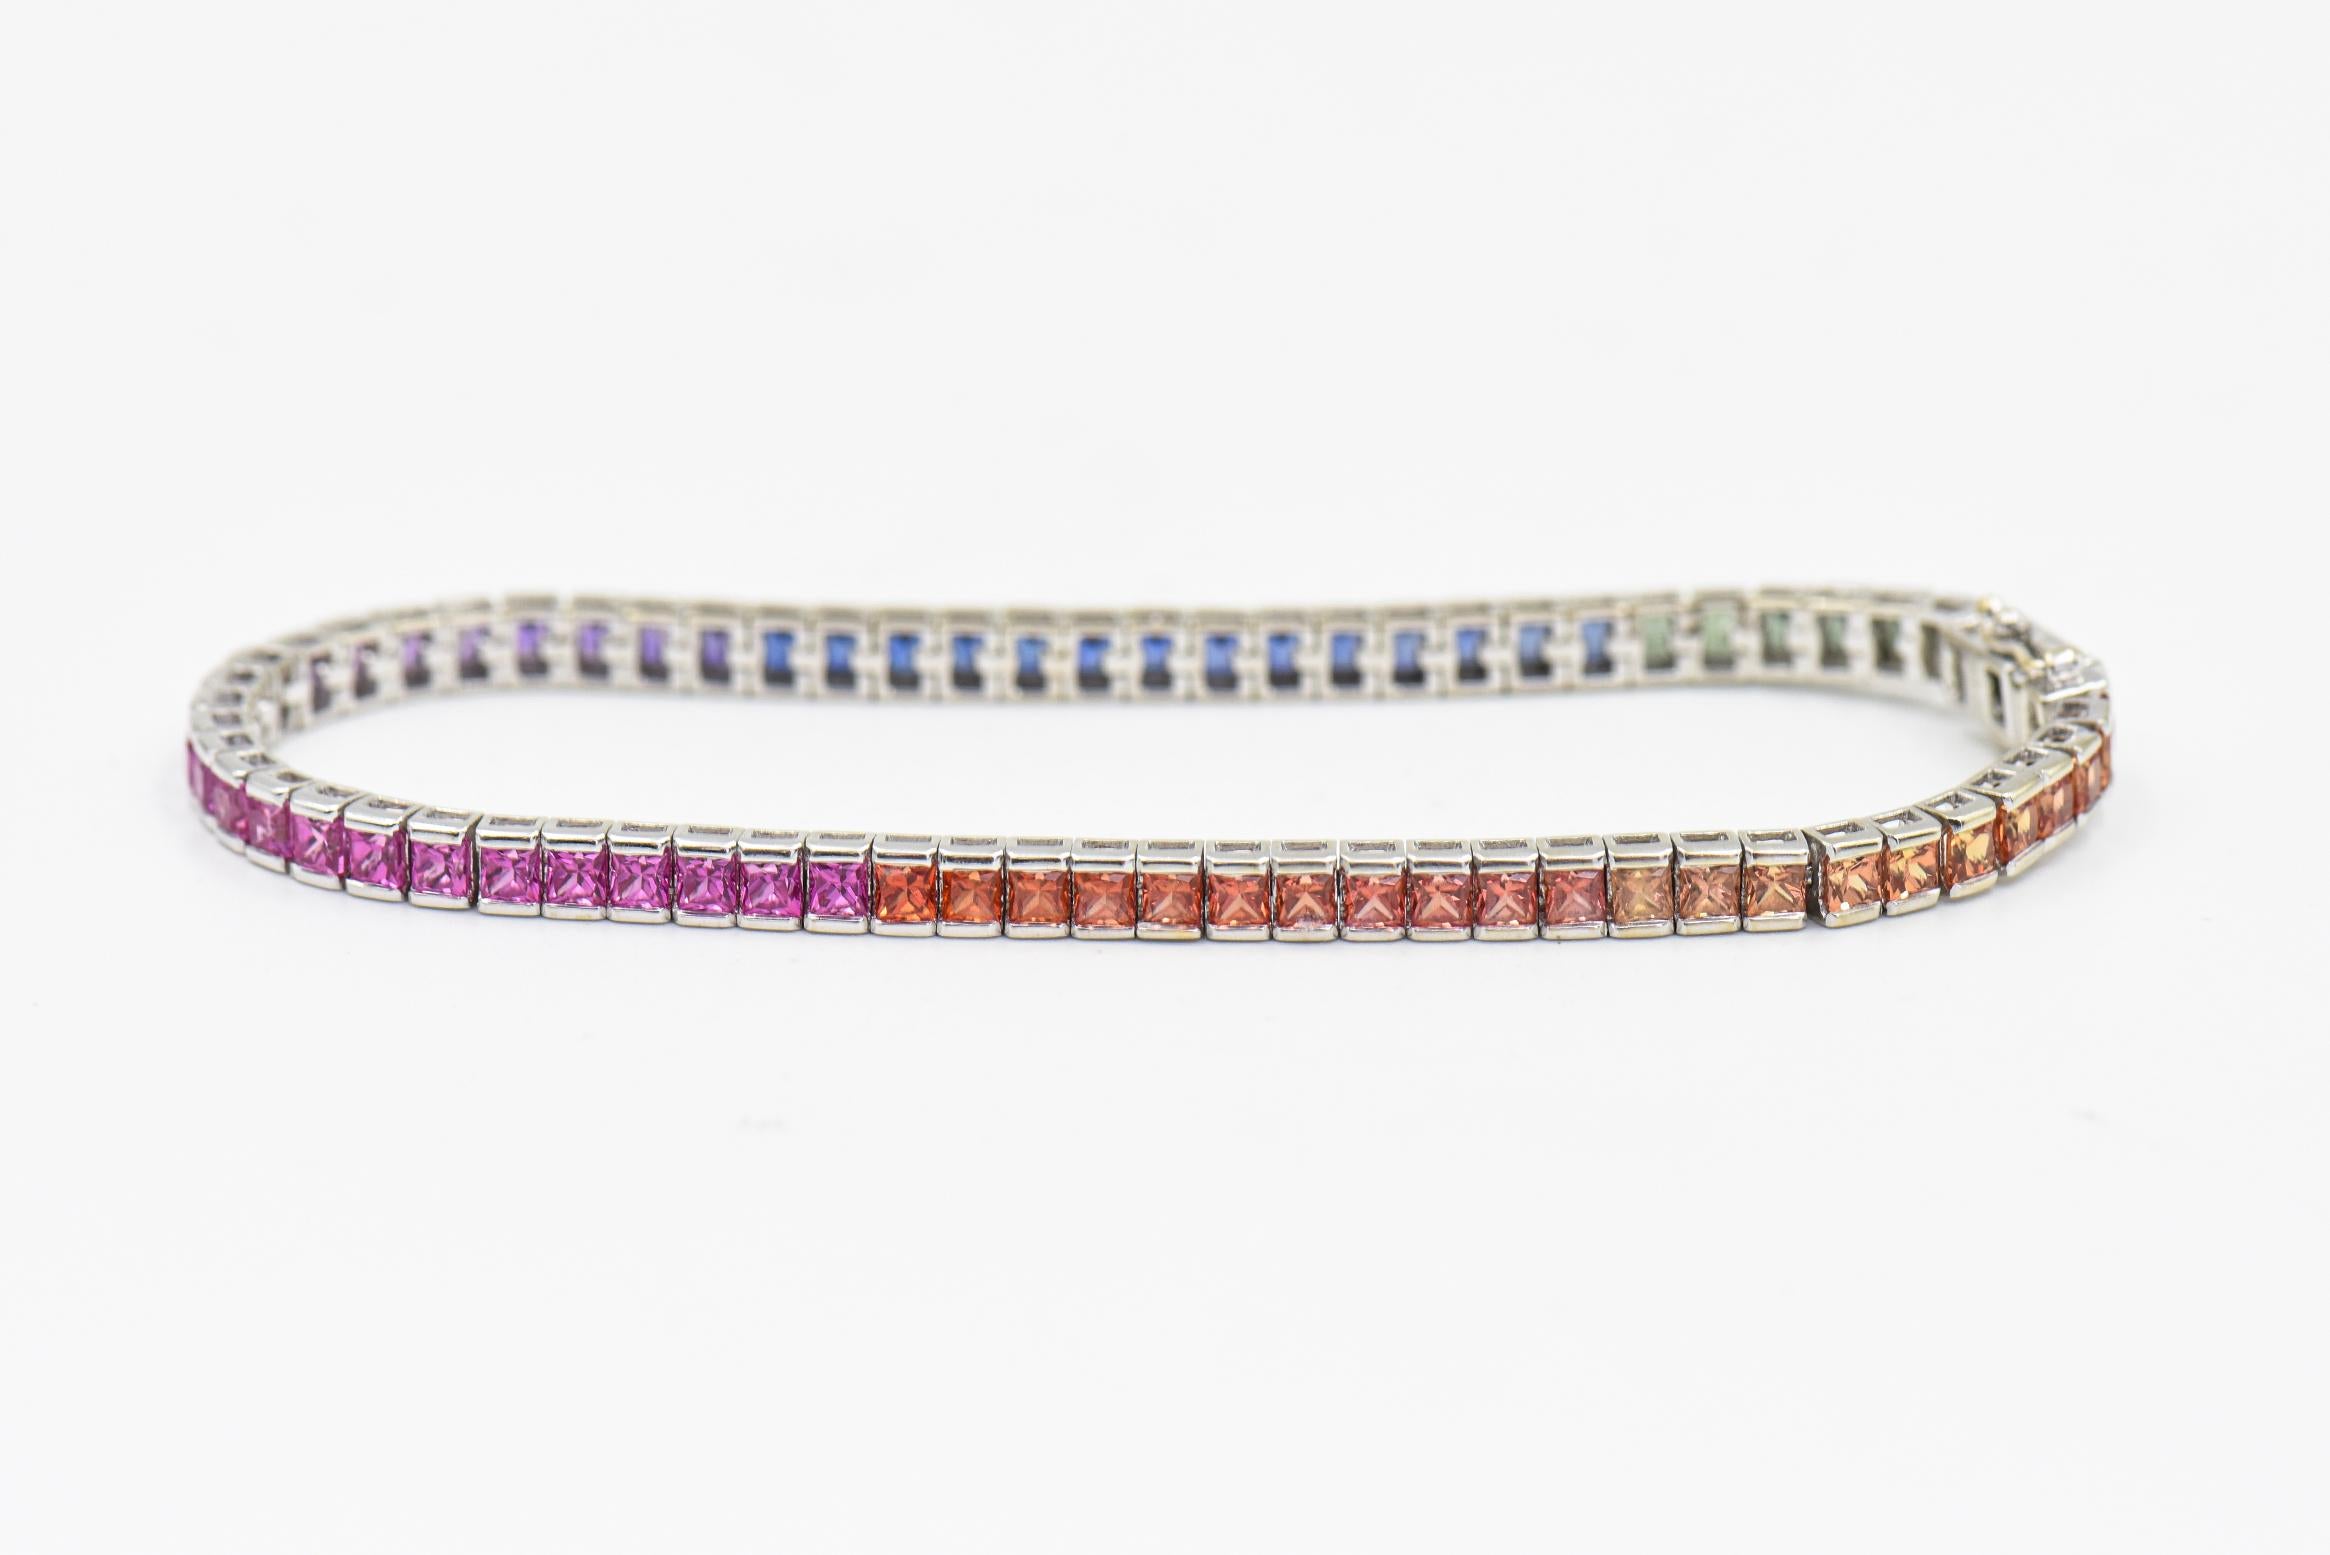 Ce bracelet coloré contient 69 saphirs princesses multicolores d'un poids total estimé à 6,90 carats.  Les couleurs vont de l'orange clair à l'orange plus foncé, du rose au violet, et du bleu au vert.  Ils sont sertis en canal dans un bracelet en or